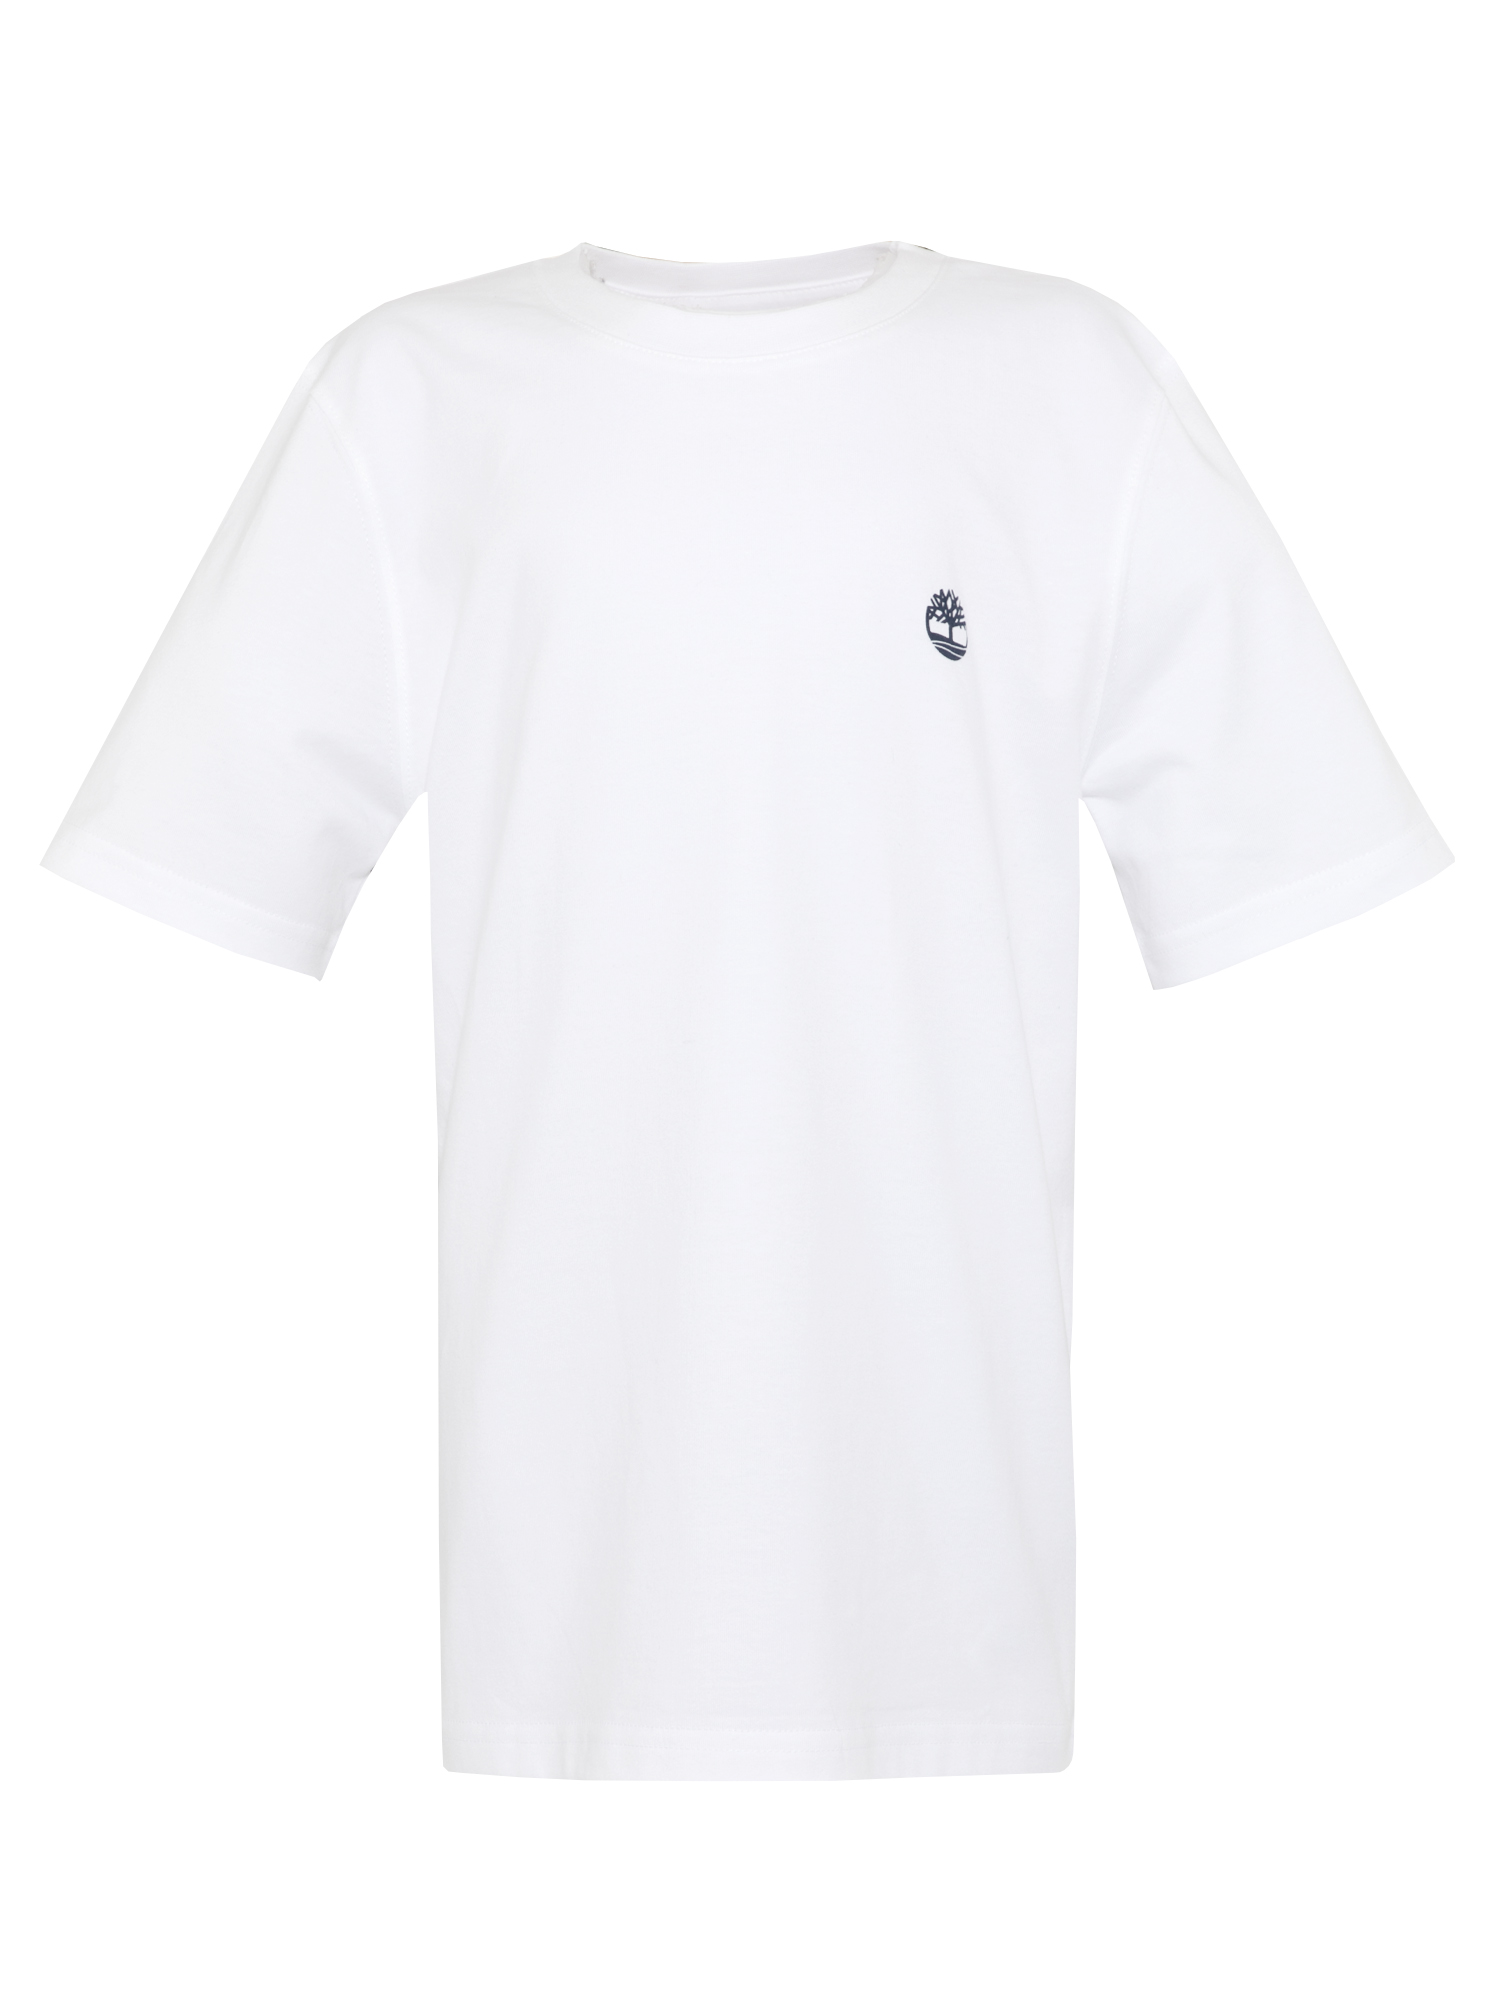 Zestaw t-shirt chłopięcy Timberland T25S33 Biały Granatowy